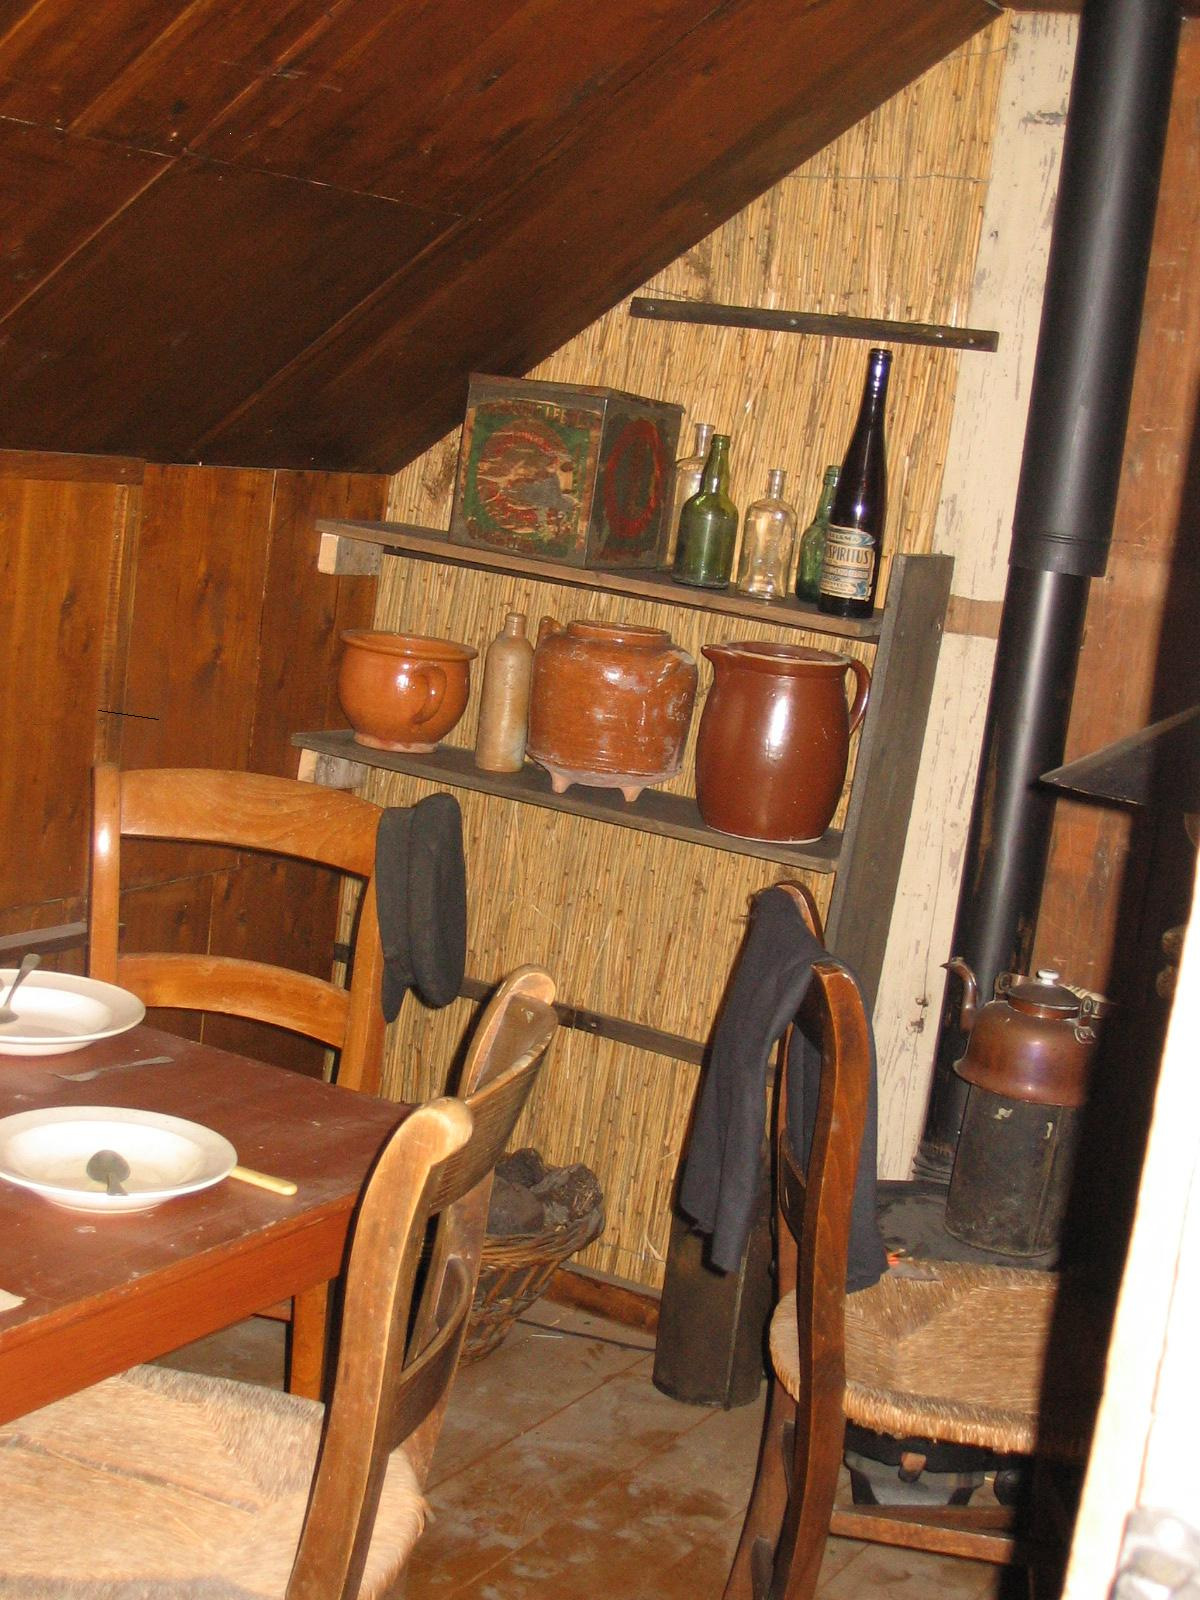 Wonen in het veen Veenarbeiders woonden met complete gezinnen in keten of plaggenhutten. Dit zijn zelfgebouwde simpele houten hutten van ongeveer 4 bij 6 of 8 meter.